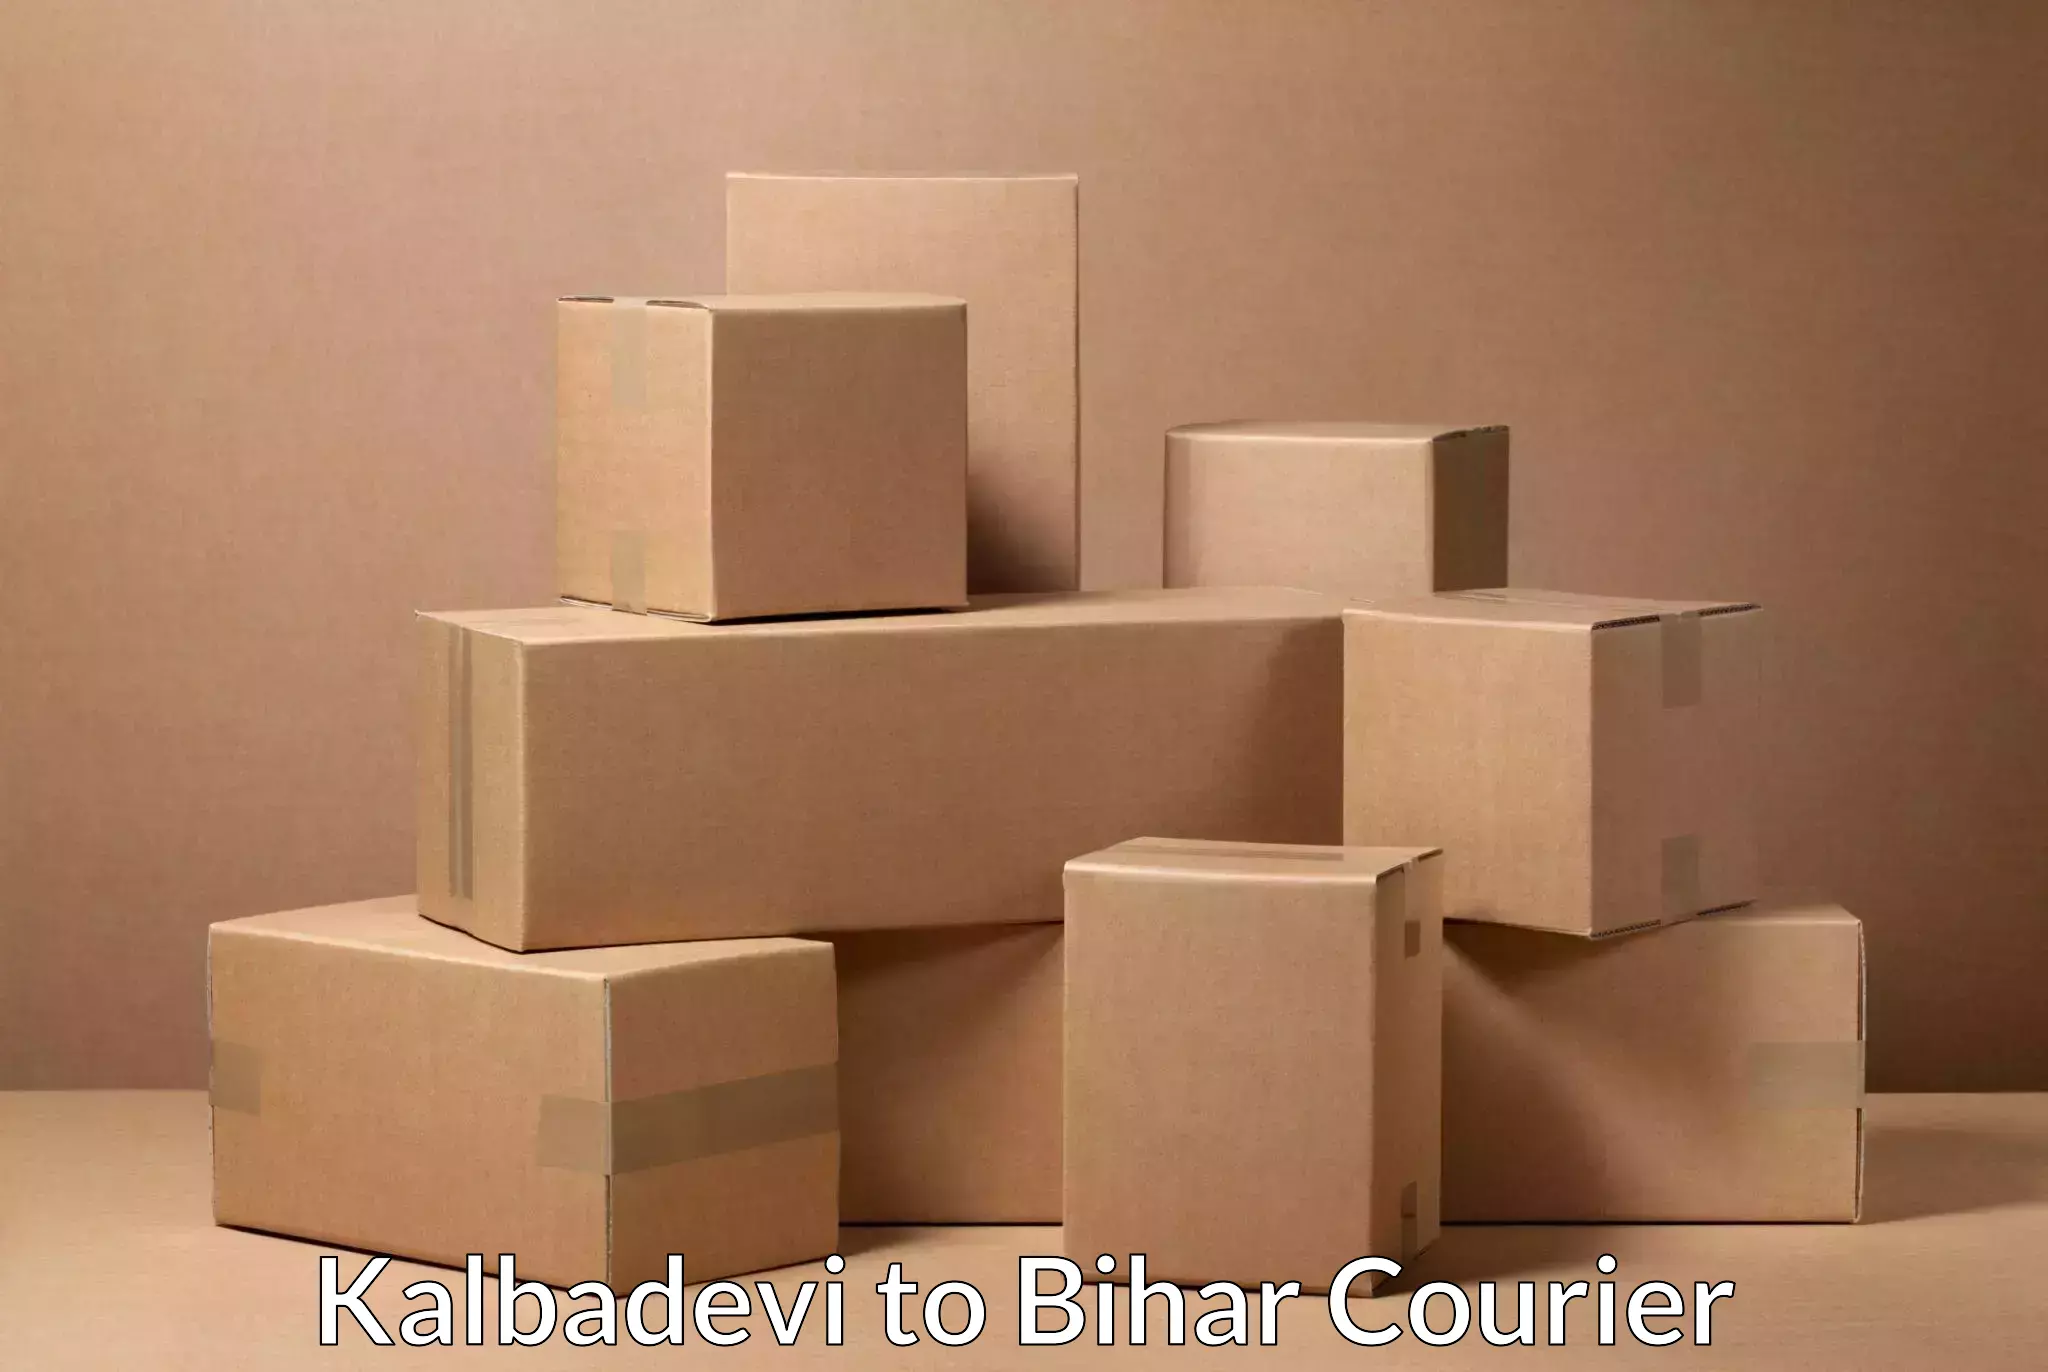 International shipping rates Kalbadevi to Dighwara